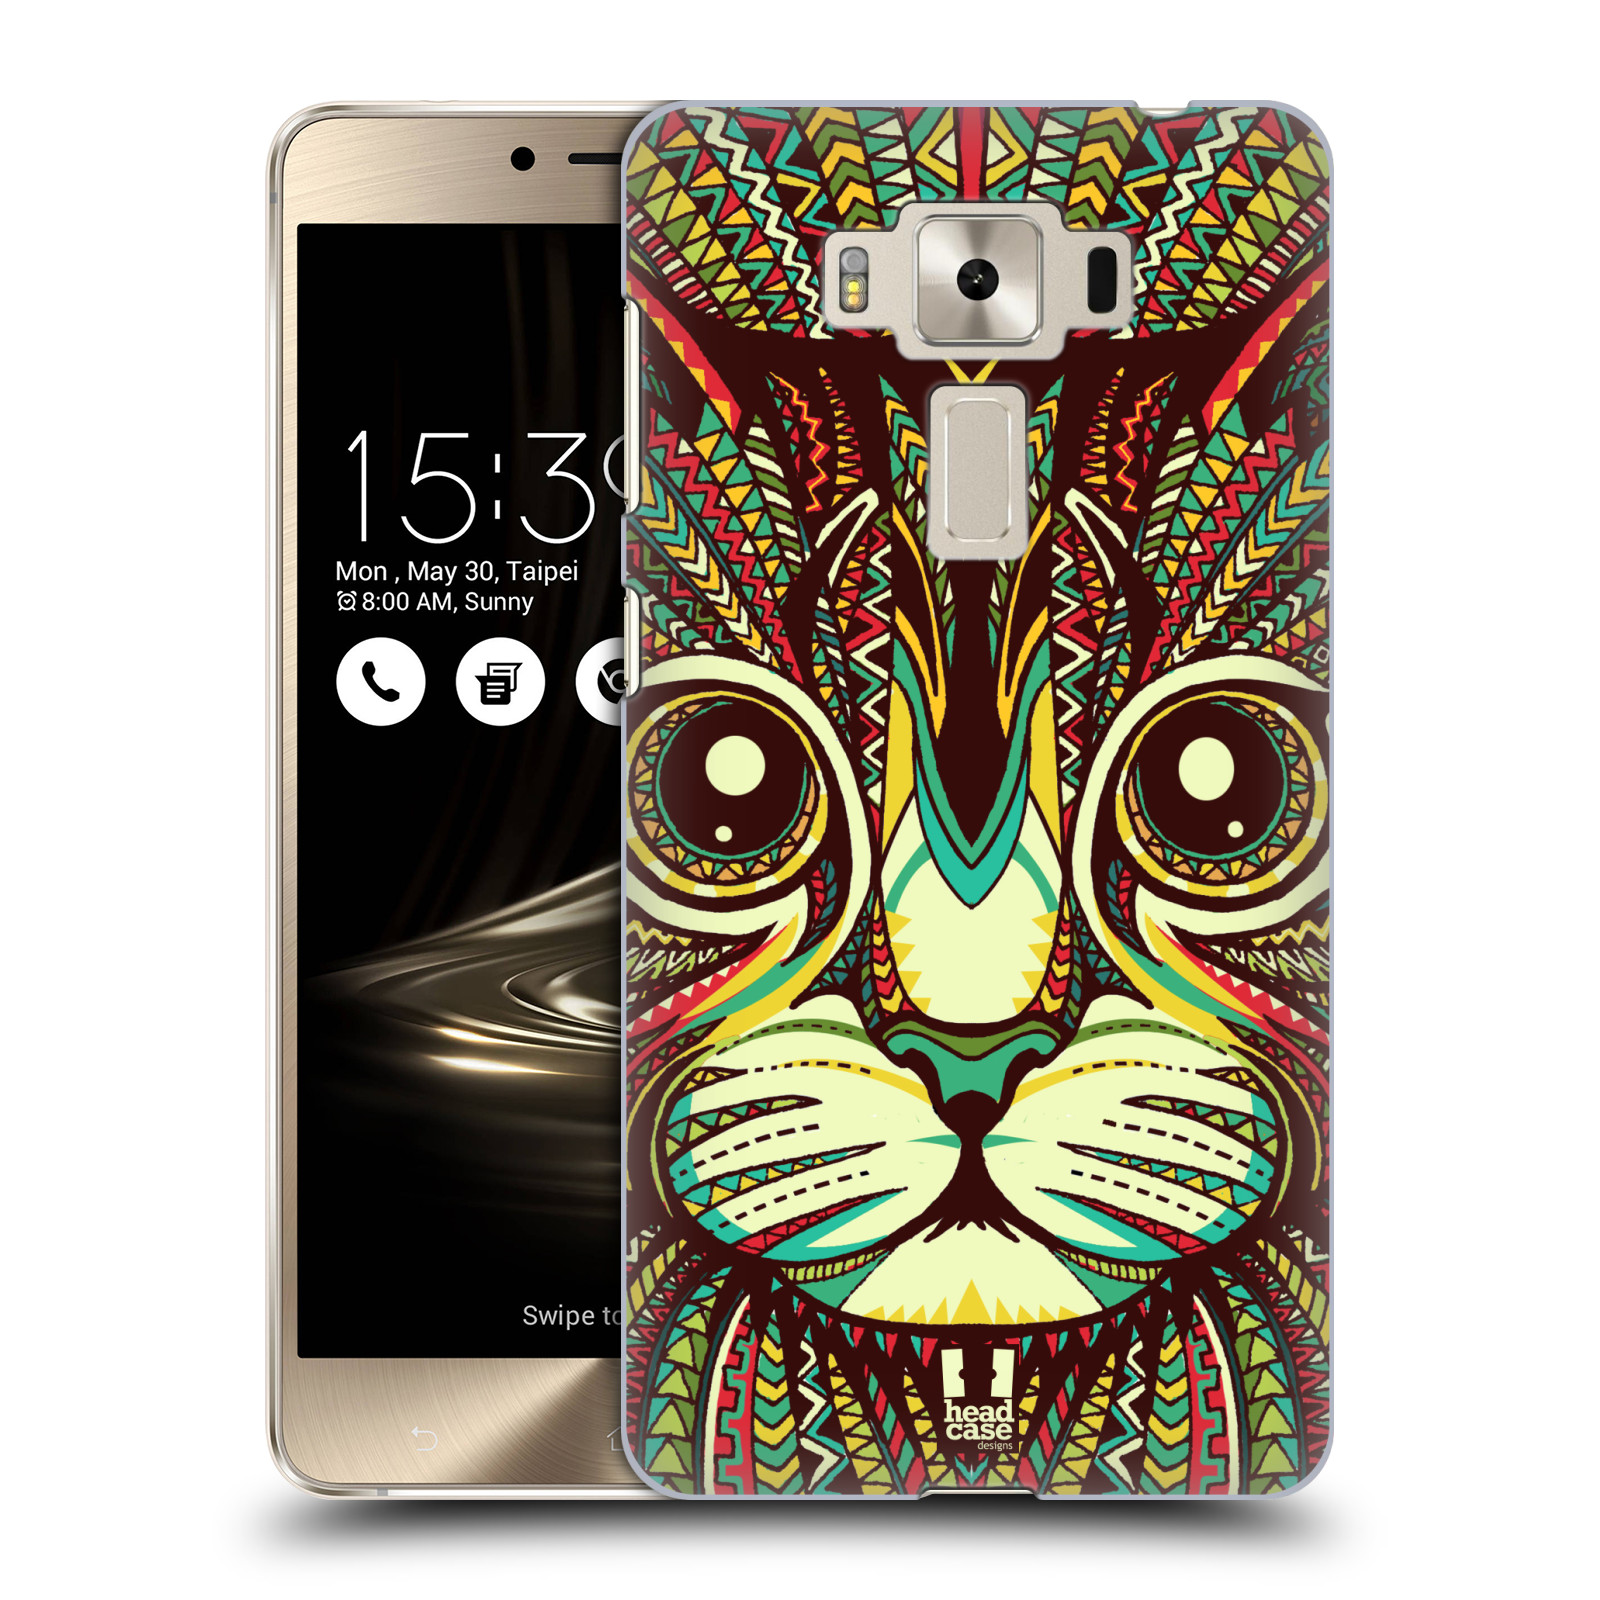 HEAD CASE plastový obal na mobil Asus Zenfone 3 DELUXE ZS550KL vzor Aztécký motiv zvíře 2 kotě